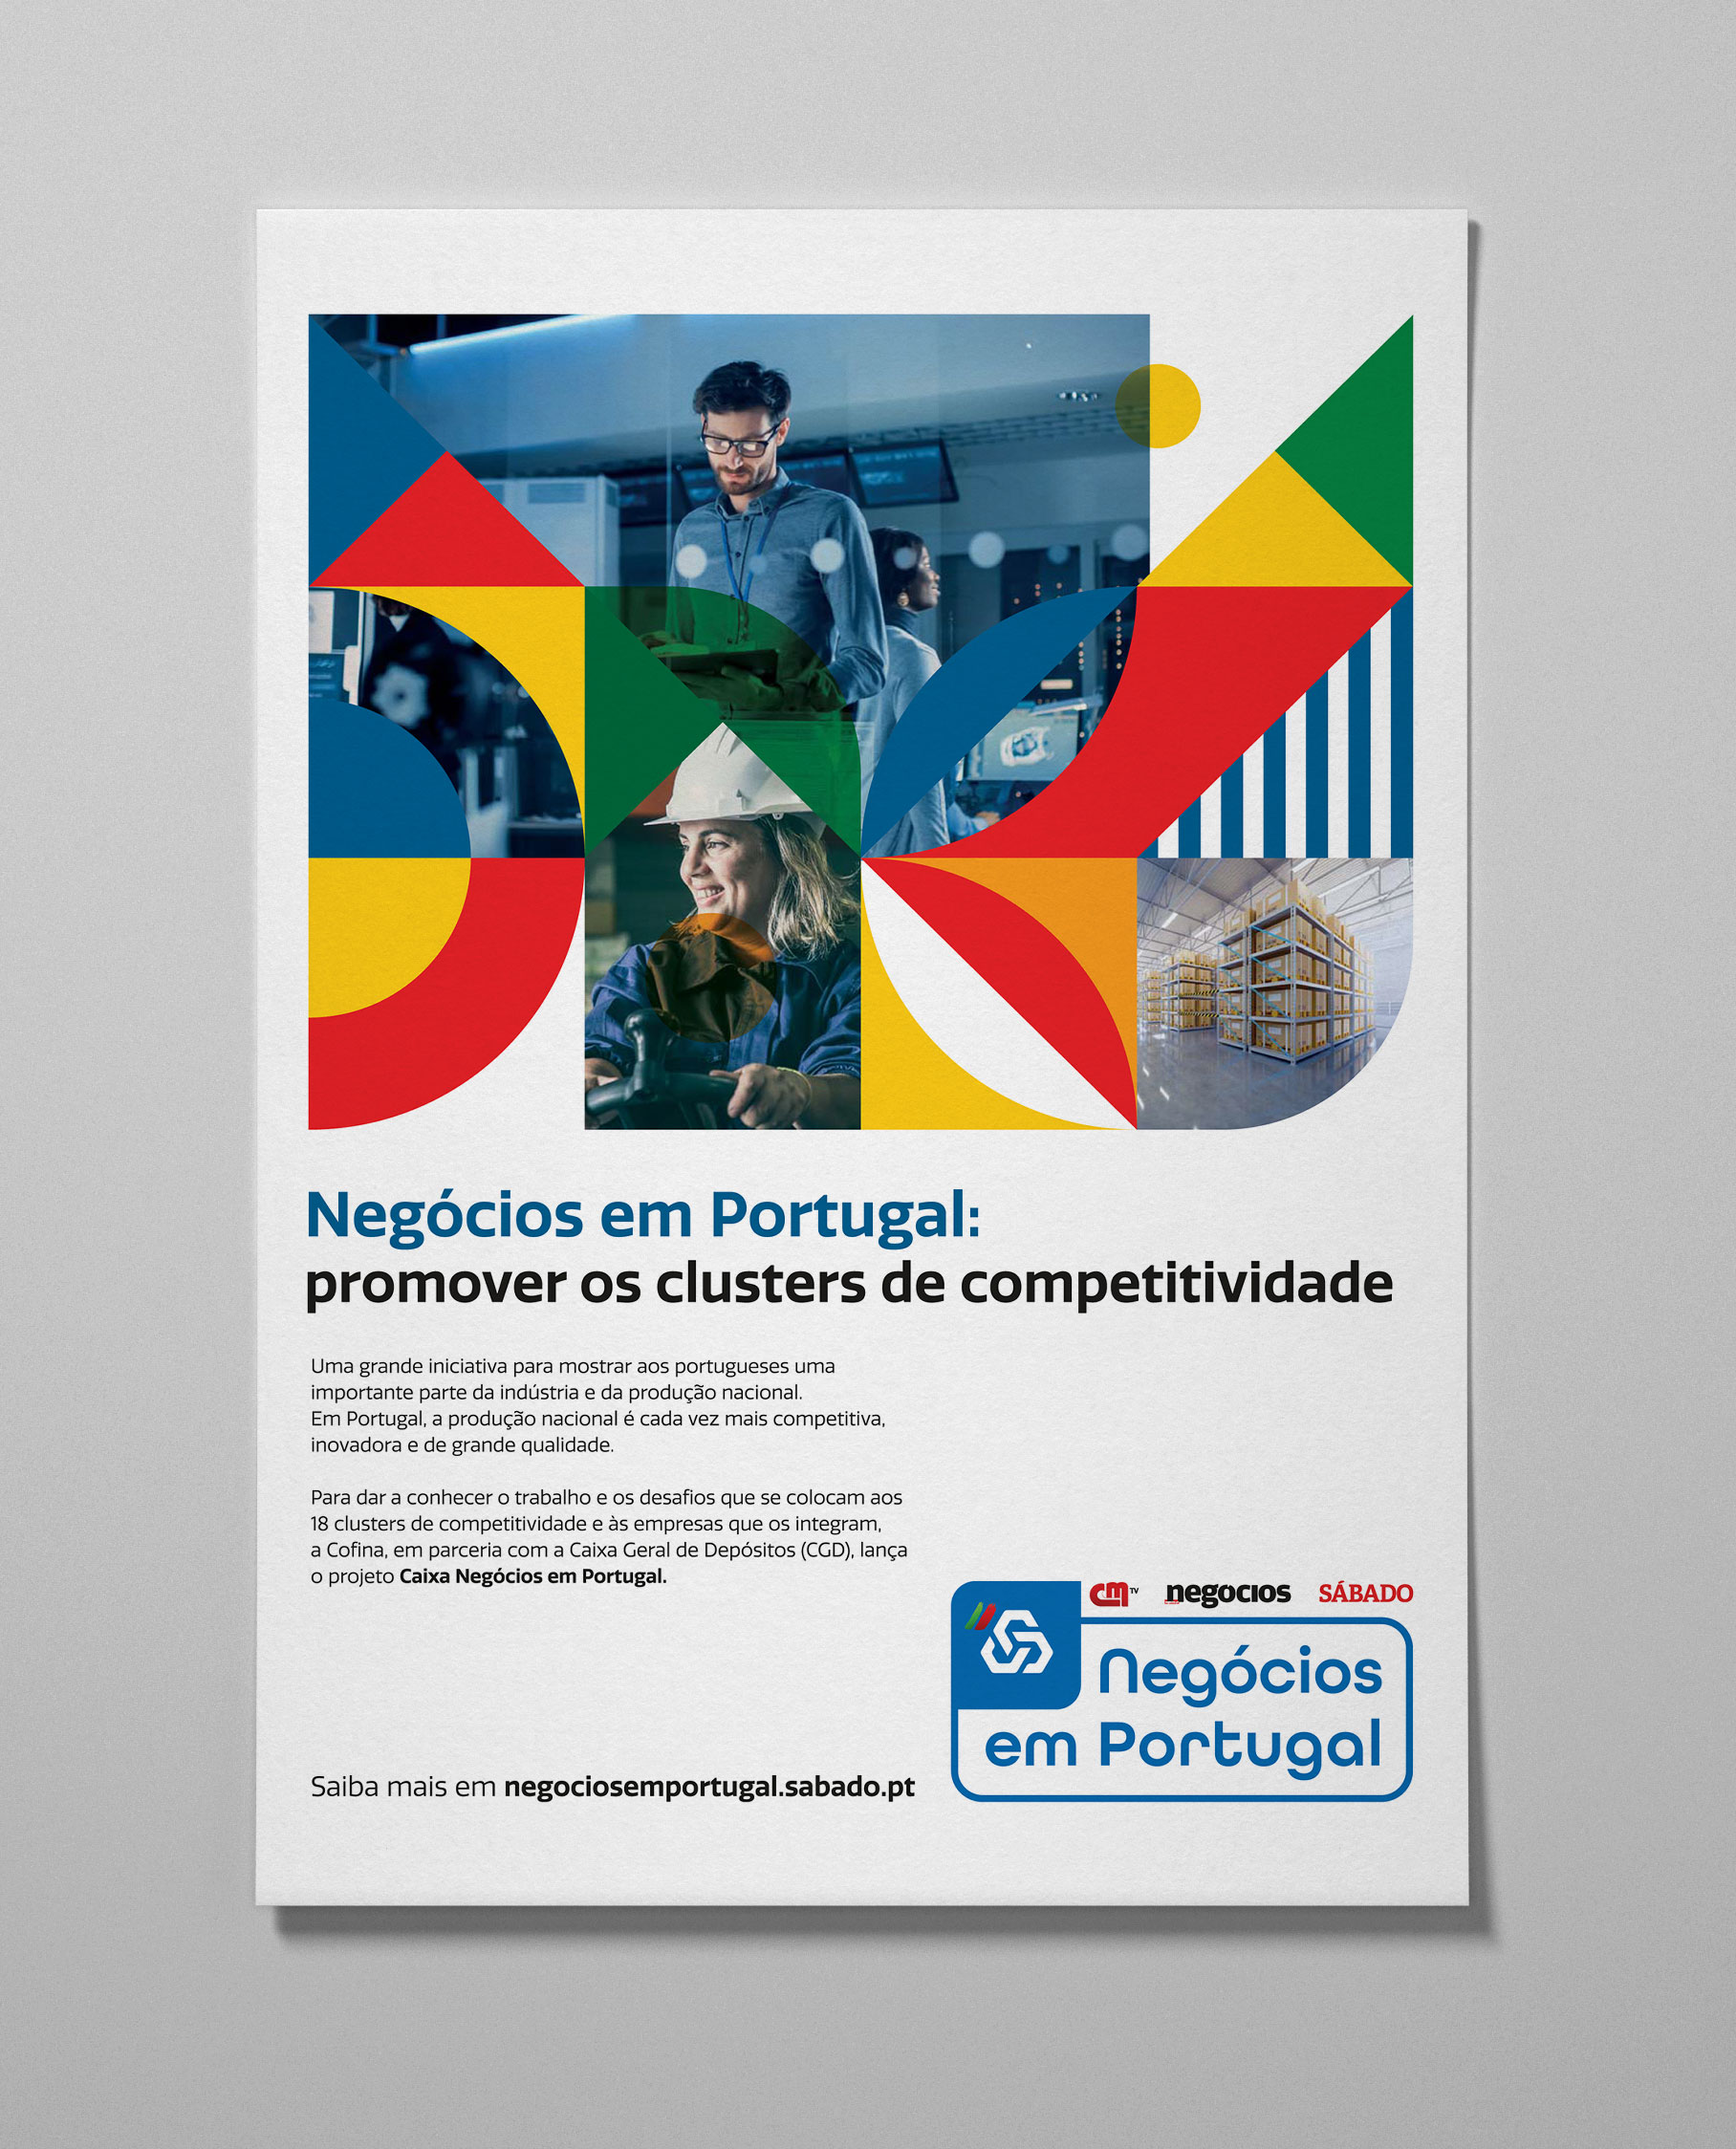 Negócios em PortugalSITE_IMAGE_ALT_SUFFIX